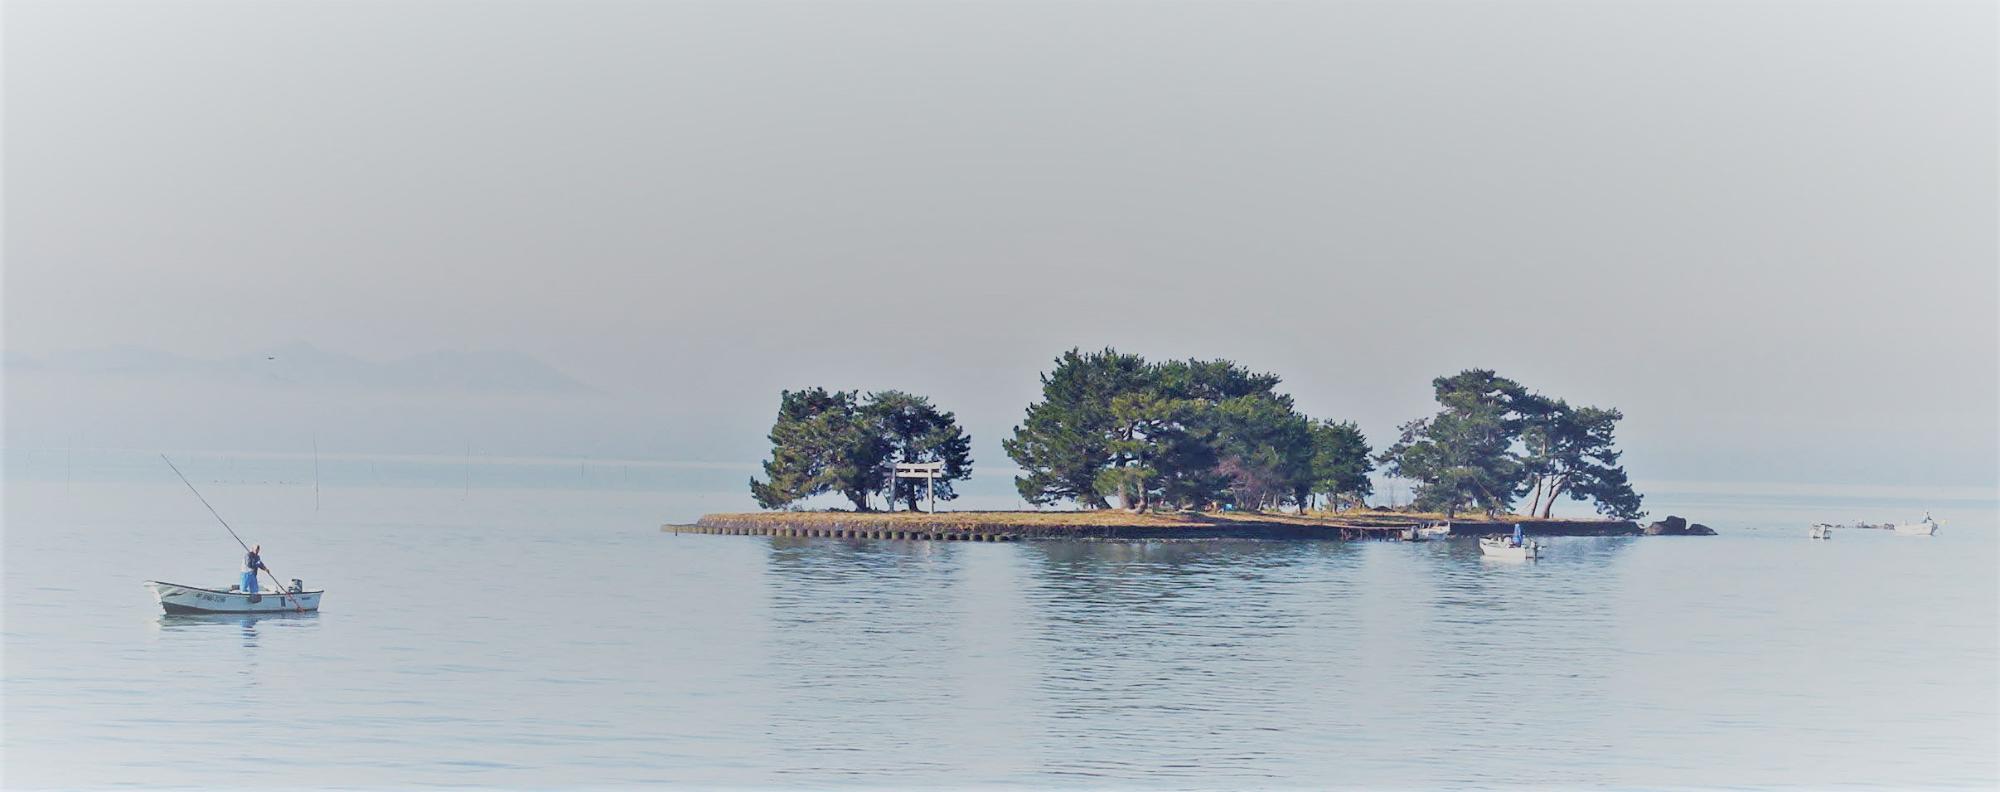 広い海に小さな島がポツンとあり、小舟が2隻見える写真